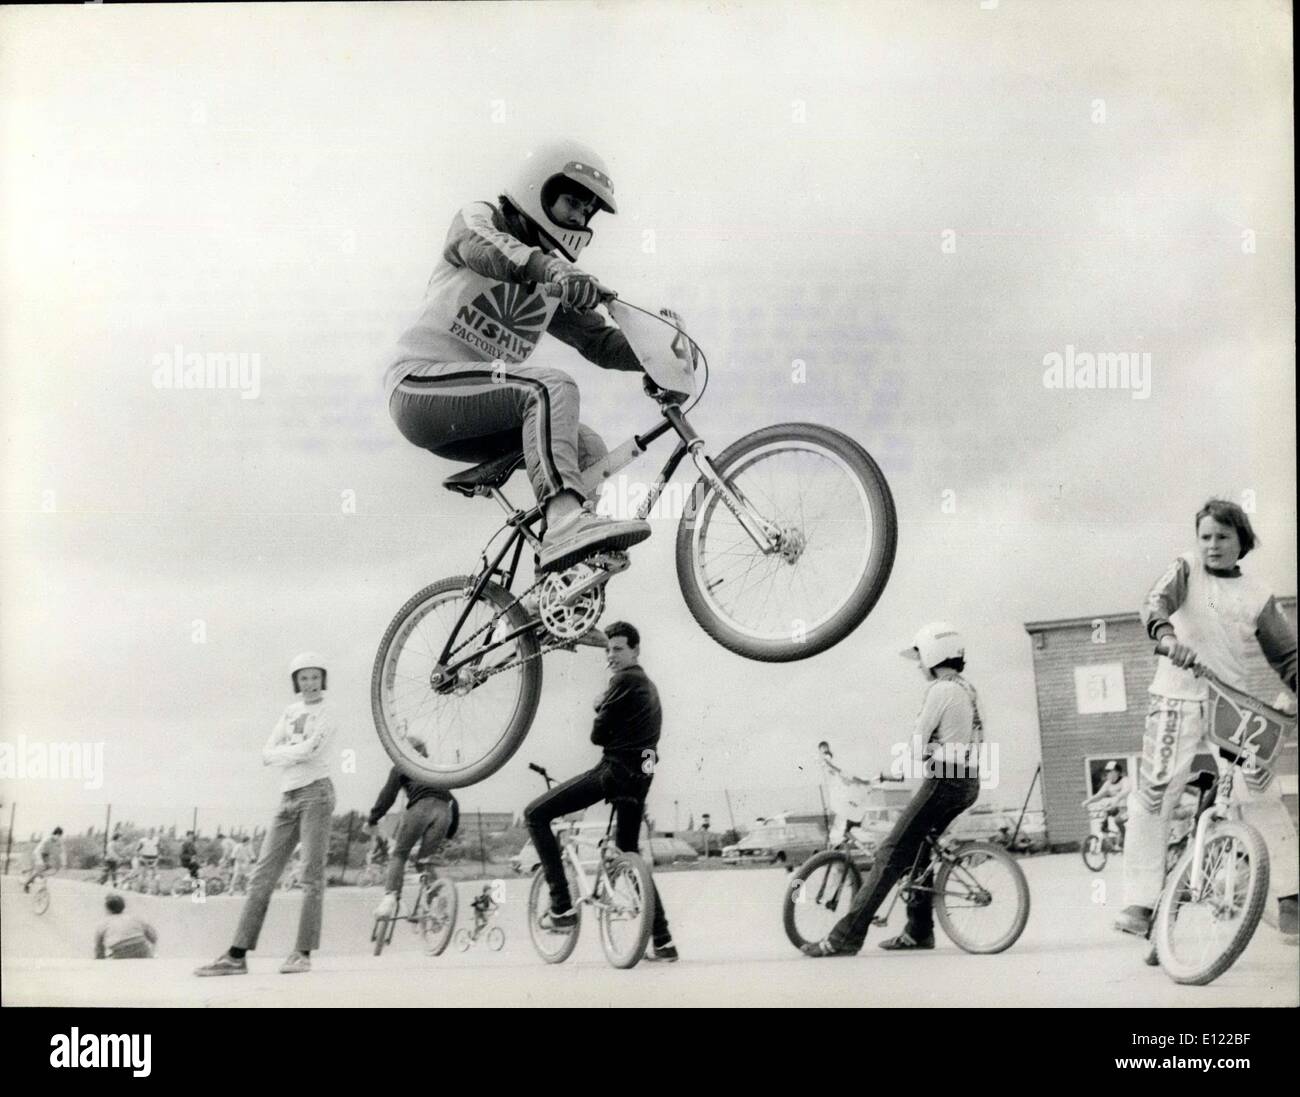 06 maggio 1983 - LN 1757 le meraviglie della Wheelie: Le ultime  per andare in bicicletta in Gran Bretagna, ha poco a che fare con mantenersi in forma o evitare le spese di corsa di un'automobile. È fatto per l'emozione pura della corsa. I Lods di età compresa tra e 18 anni si riuniscono per partecipare alla più rapida crescita della Gran Bretagna moto-bicicletta o BMX in breve. I giovani cavalcano moto appositamente realizzate con pneumatici pesanti, ideali per piste di fondo sconnesso. Freestyle BMX è come la ginnastica su una bicicletta. I piloti del Devi Devi si ribellano, si saltano e si girano le ruote incredibili Foto Stock